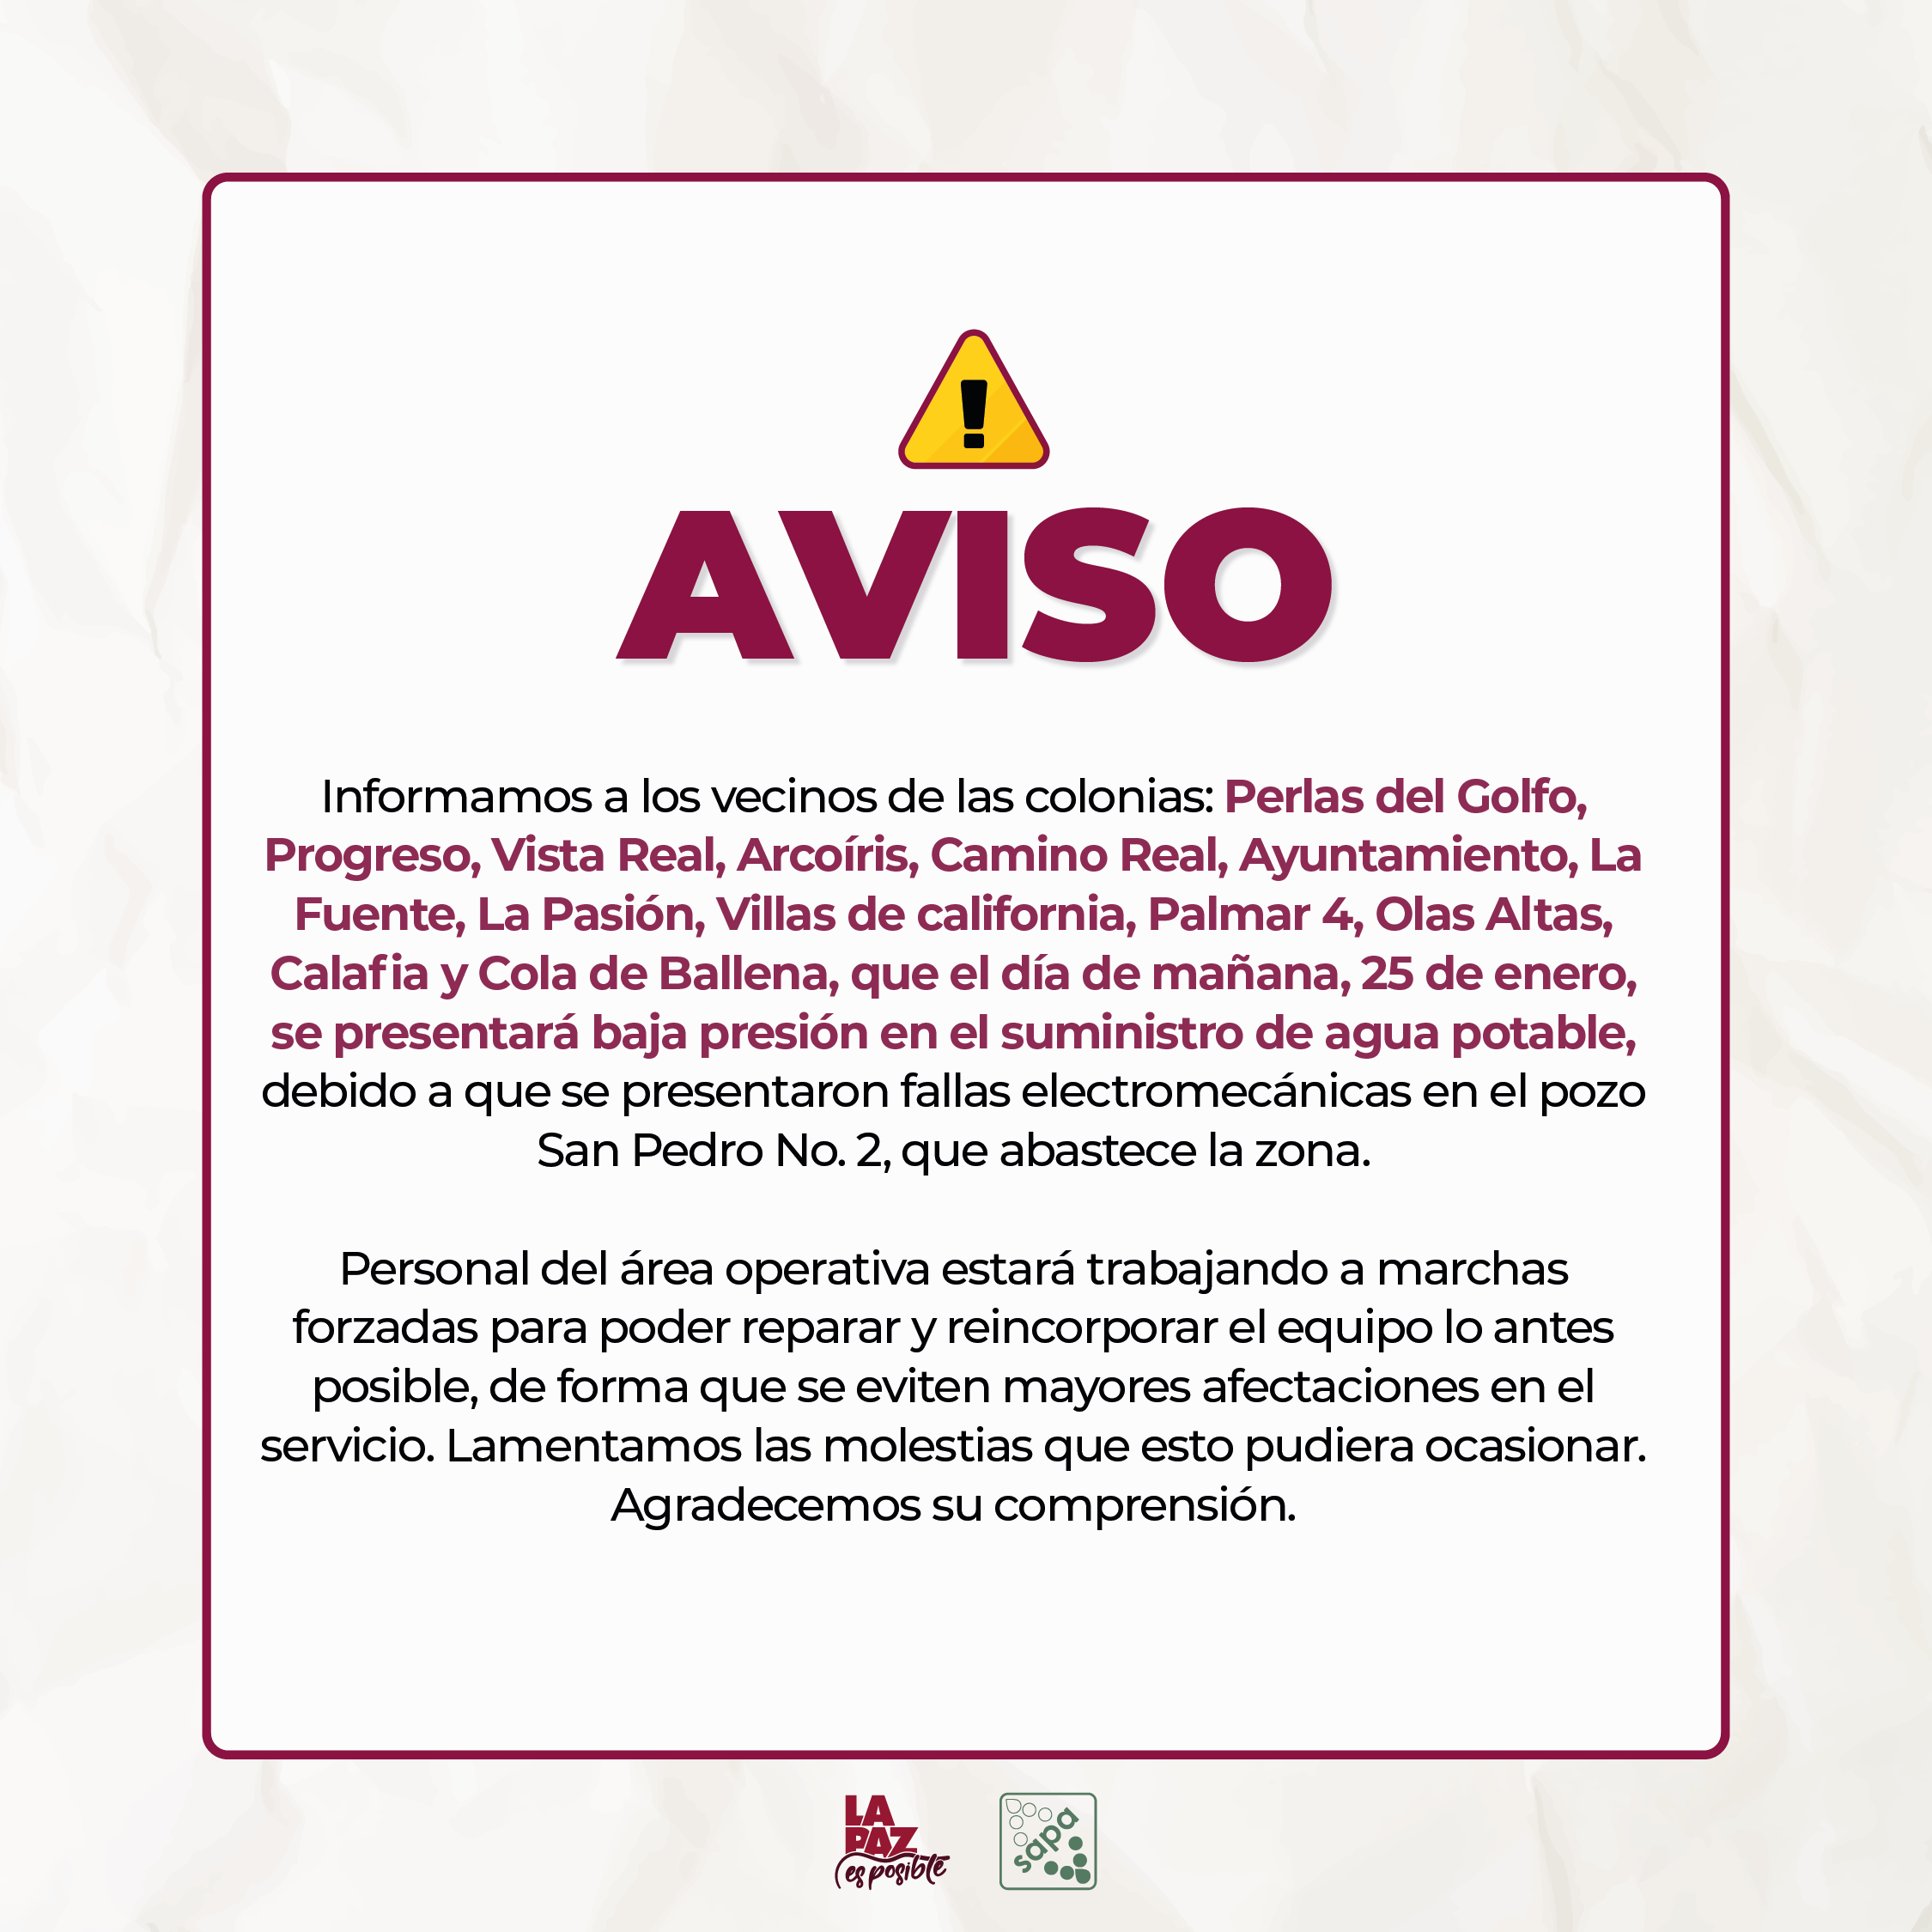 Debido a fallas electromecánicas en un pozo, se presentará baja presión al sur de la ciudad el 25 de enero: OOMSAPAS La Paz